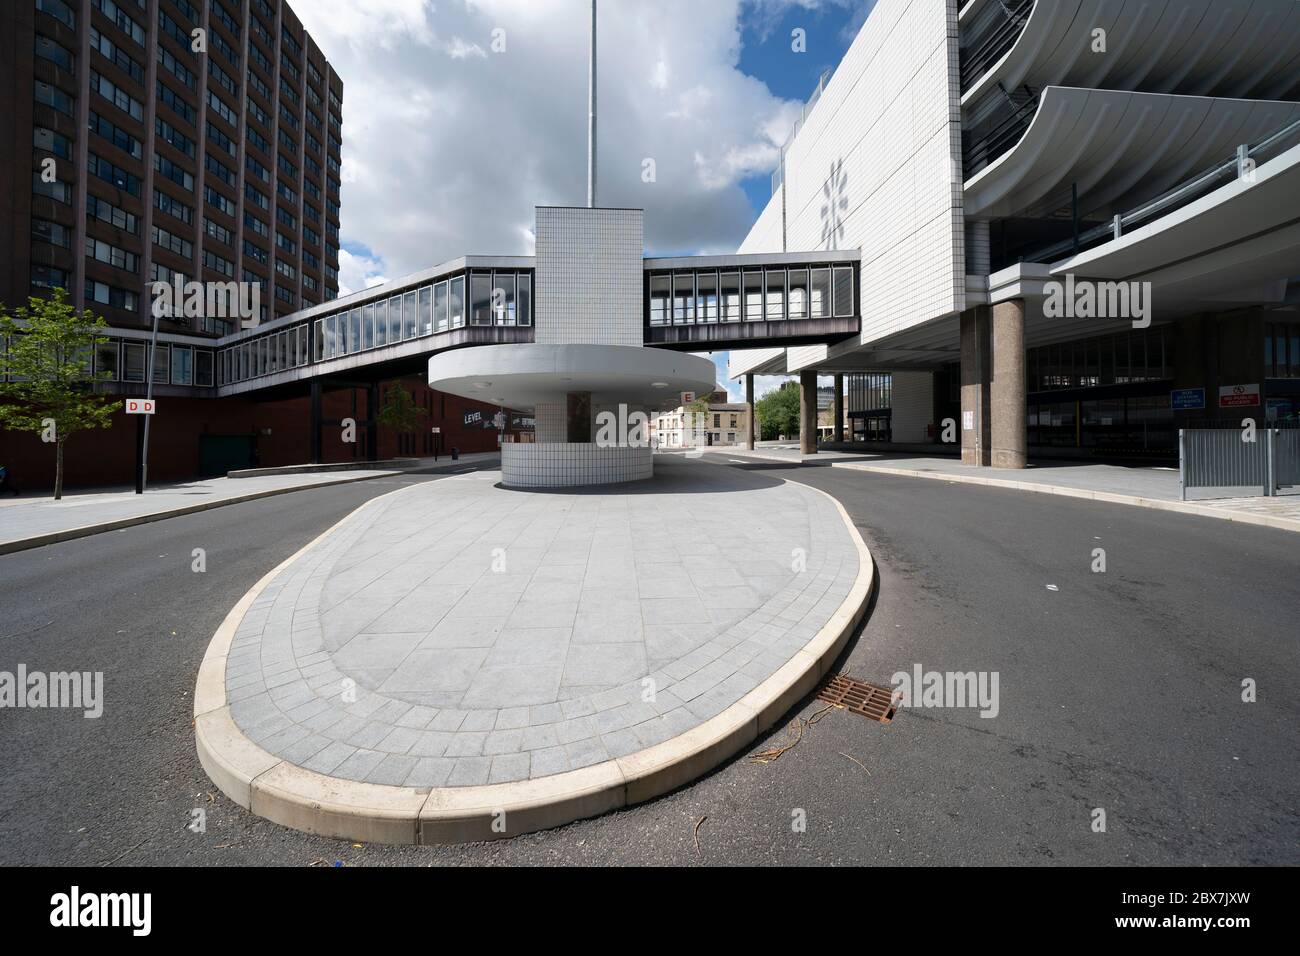 Preston, Reino Unido. 5 de junio de 2020. La imagen muestra la estación de autobuses Preston construida por Ove Arup y los socios en el estilo arquitectónico Brutalista entre 1968 y 19 Foto de stock